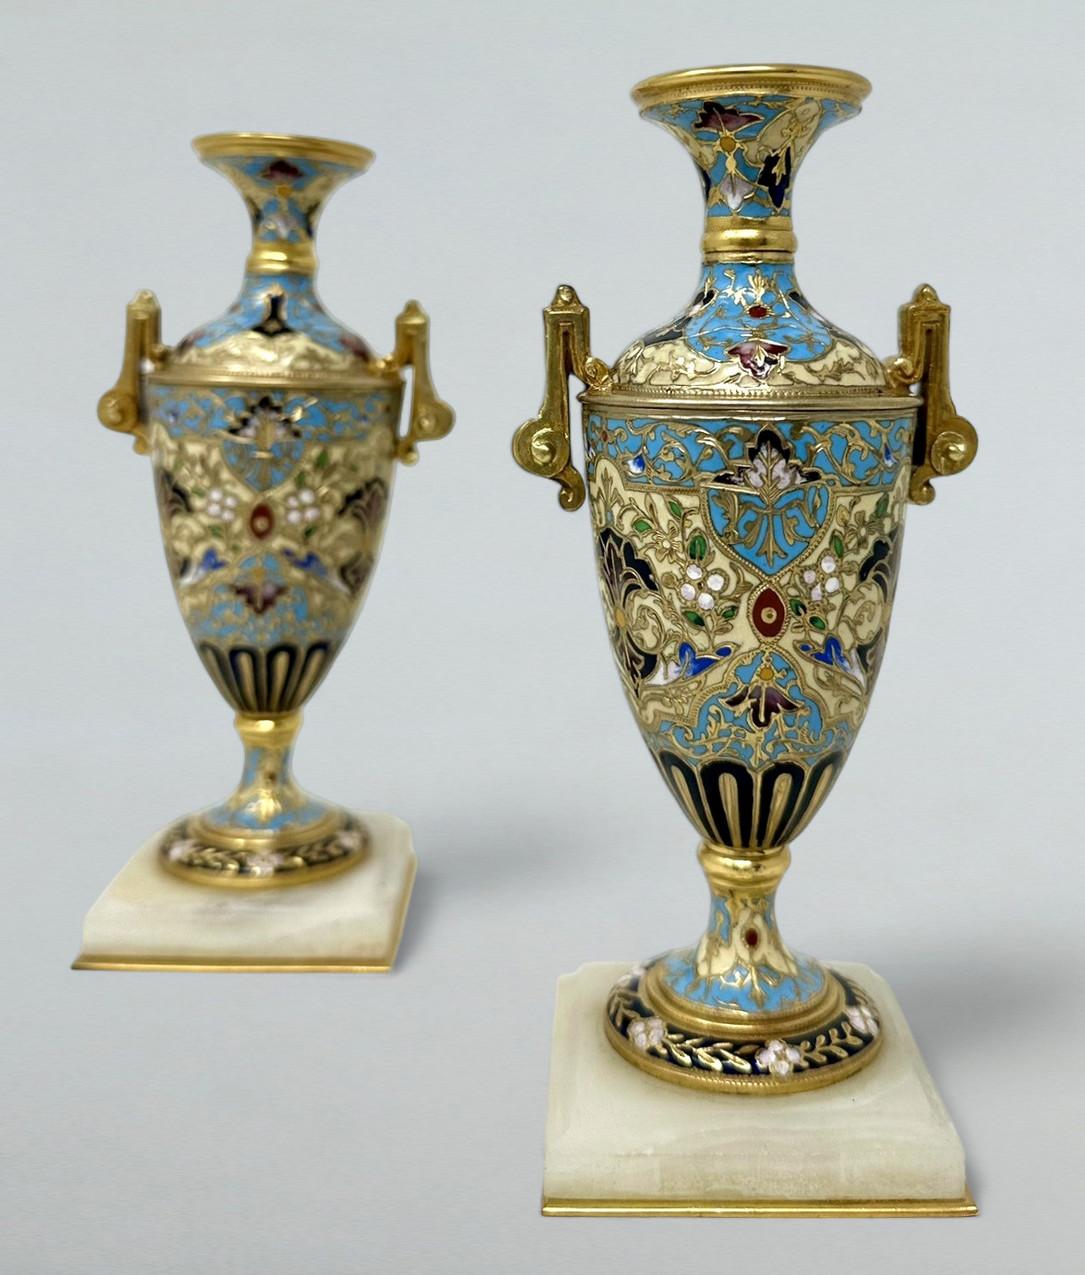 Paire de vases en bronze Dore et cloisonné Champleve à deux anses, d'une qualité exceptionnelle et d'une taille compacte, d'un style exceptionnel. Troisième quart du dix-neuvième siècle. 

Cette magnifique paire de vases est réalisée en bronze doré